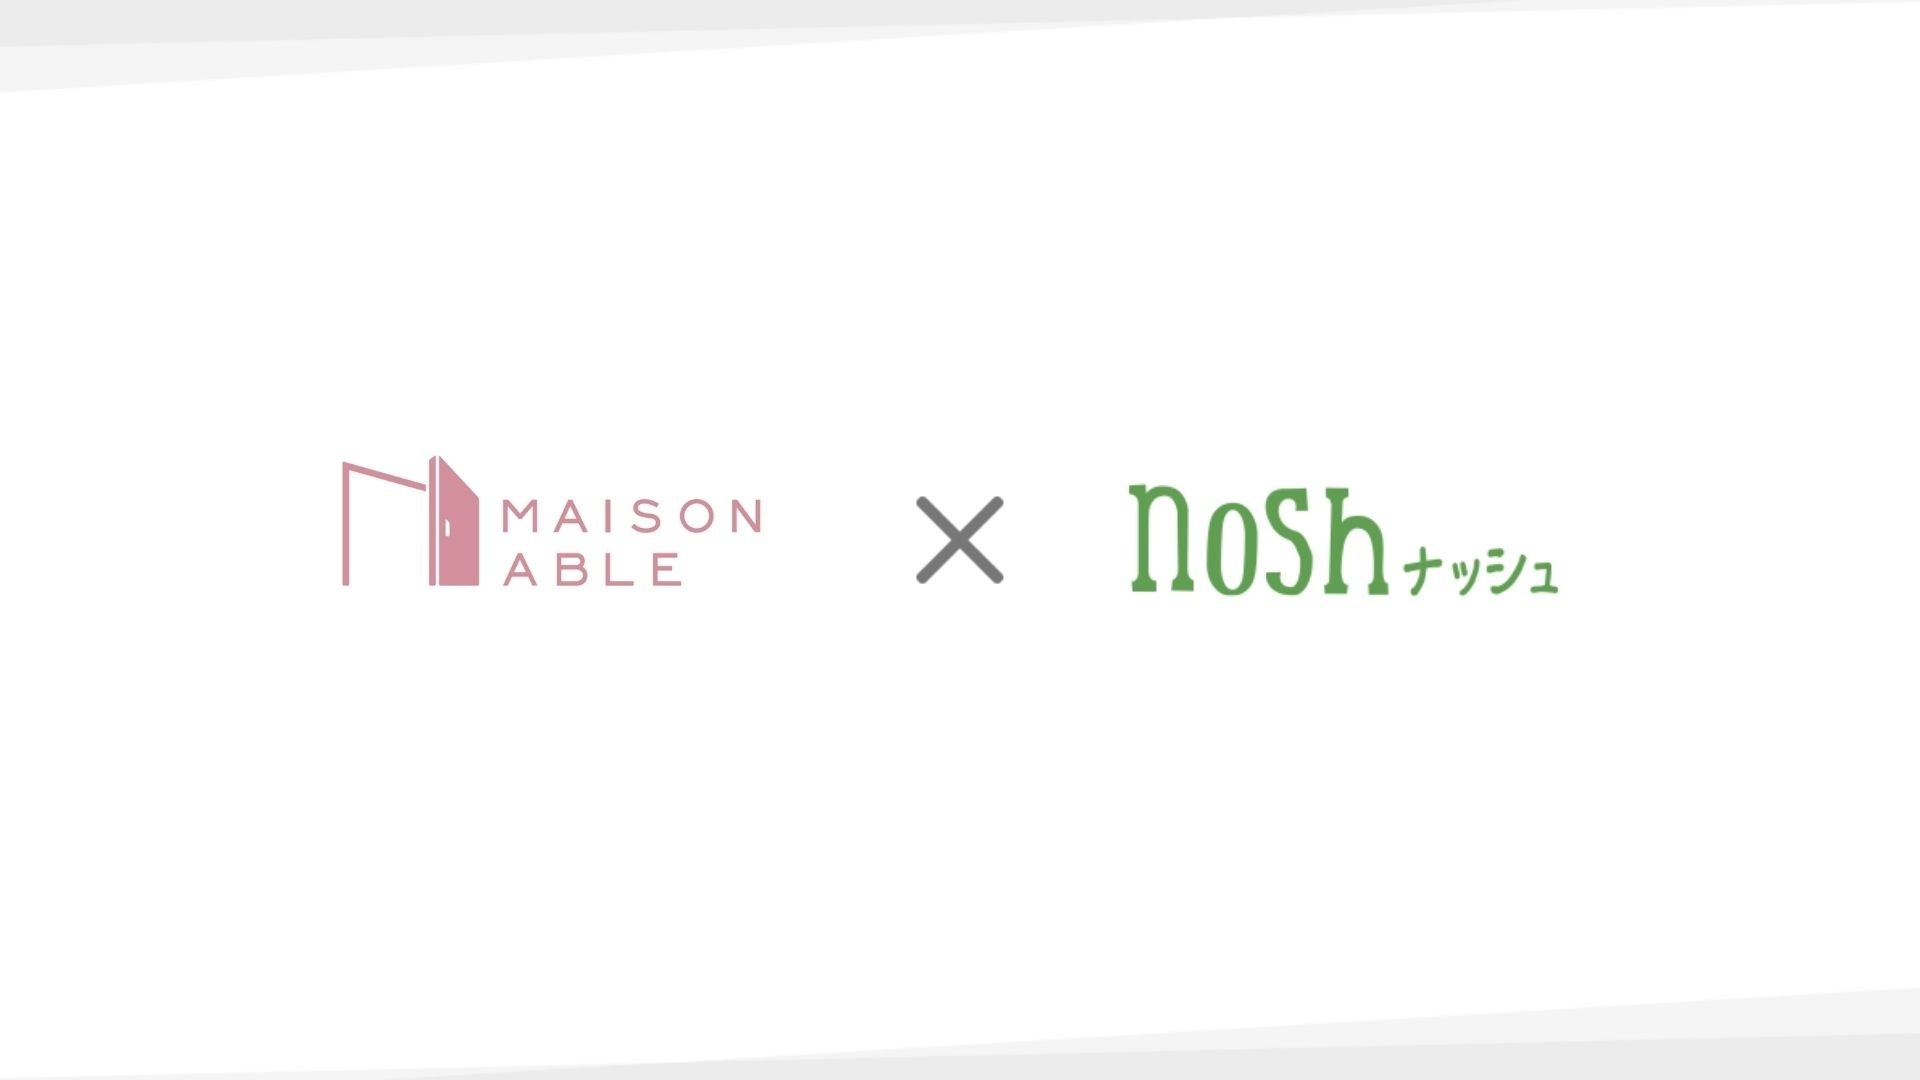 ひとり暮らし女性を応援する生活サポートブランド「MAISON ABLE」と「ナッシュ株式会社」サービス連携開始のお知らせ